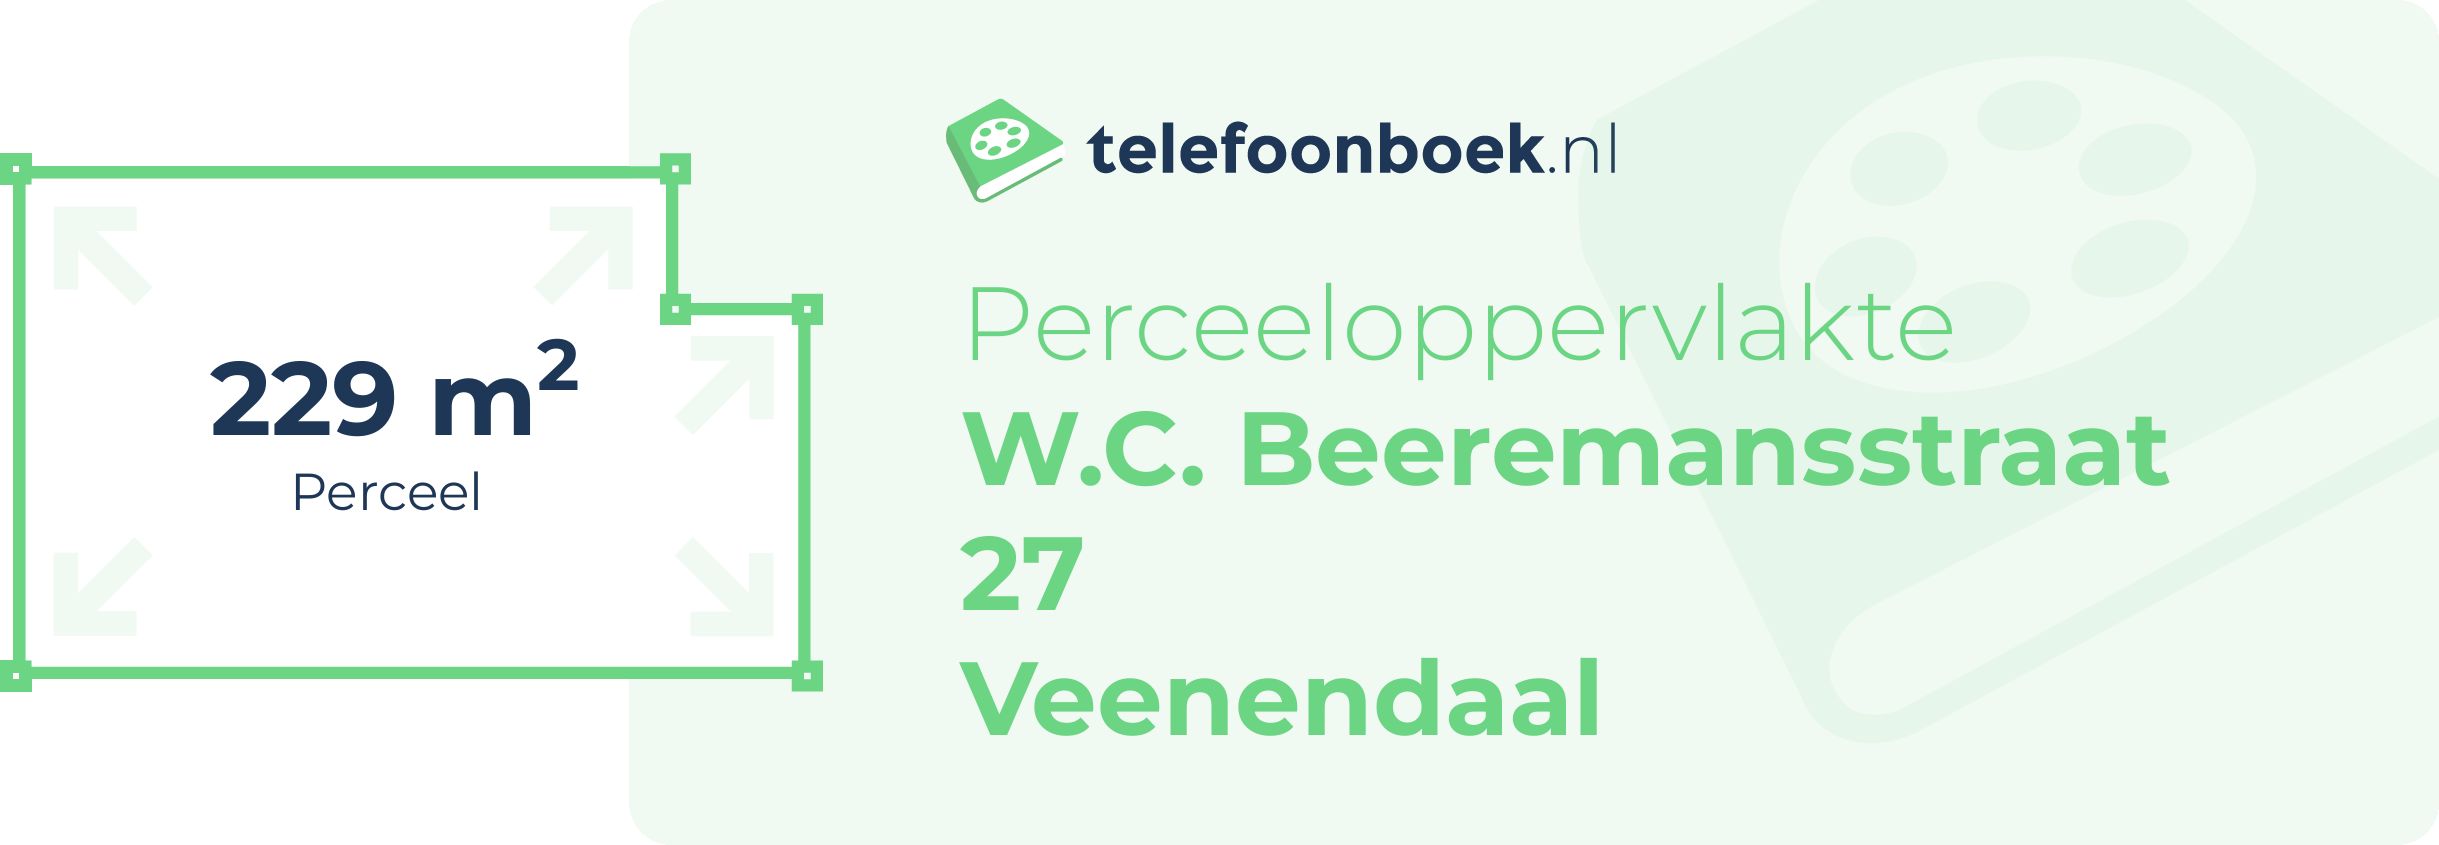 Perceeloppervlakte W.C. Beeremansstraat 27 Veenendaal